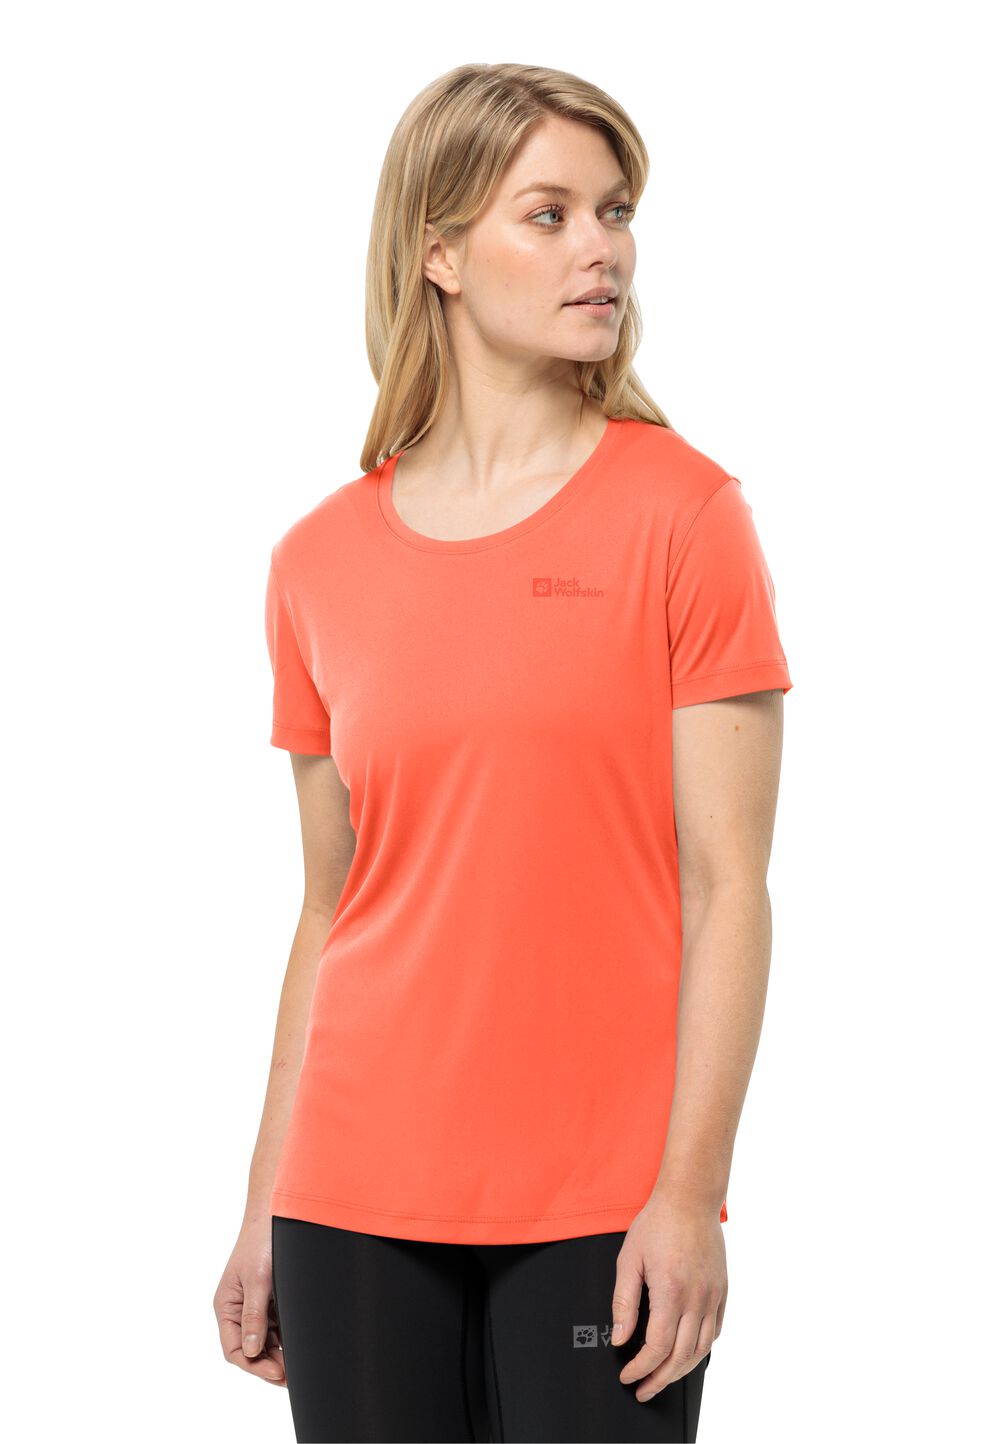 Jack Wolfskin Tech T-Shirt Women Functioneel shirt Dames L rood digital orange